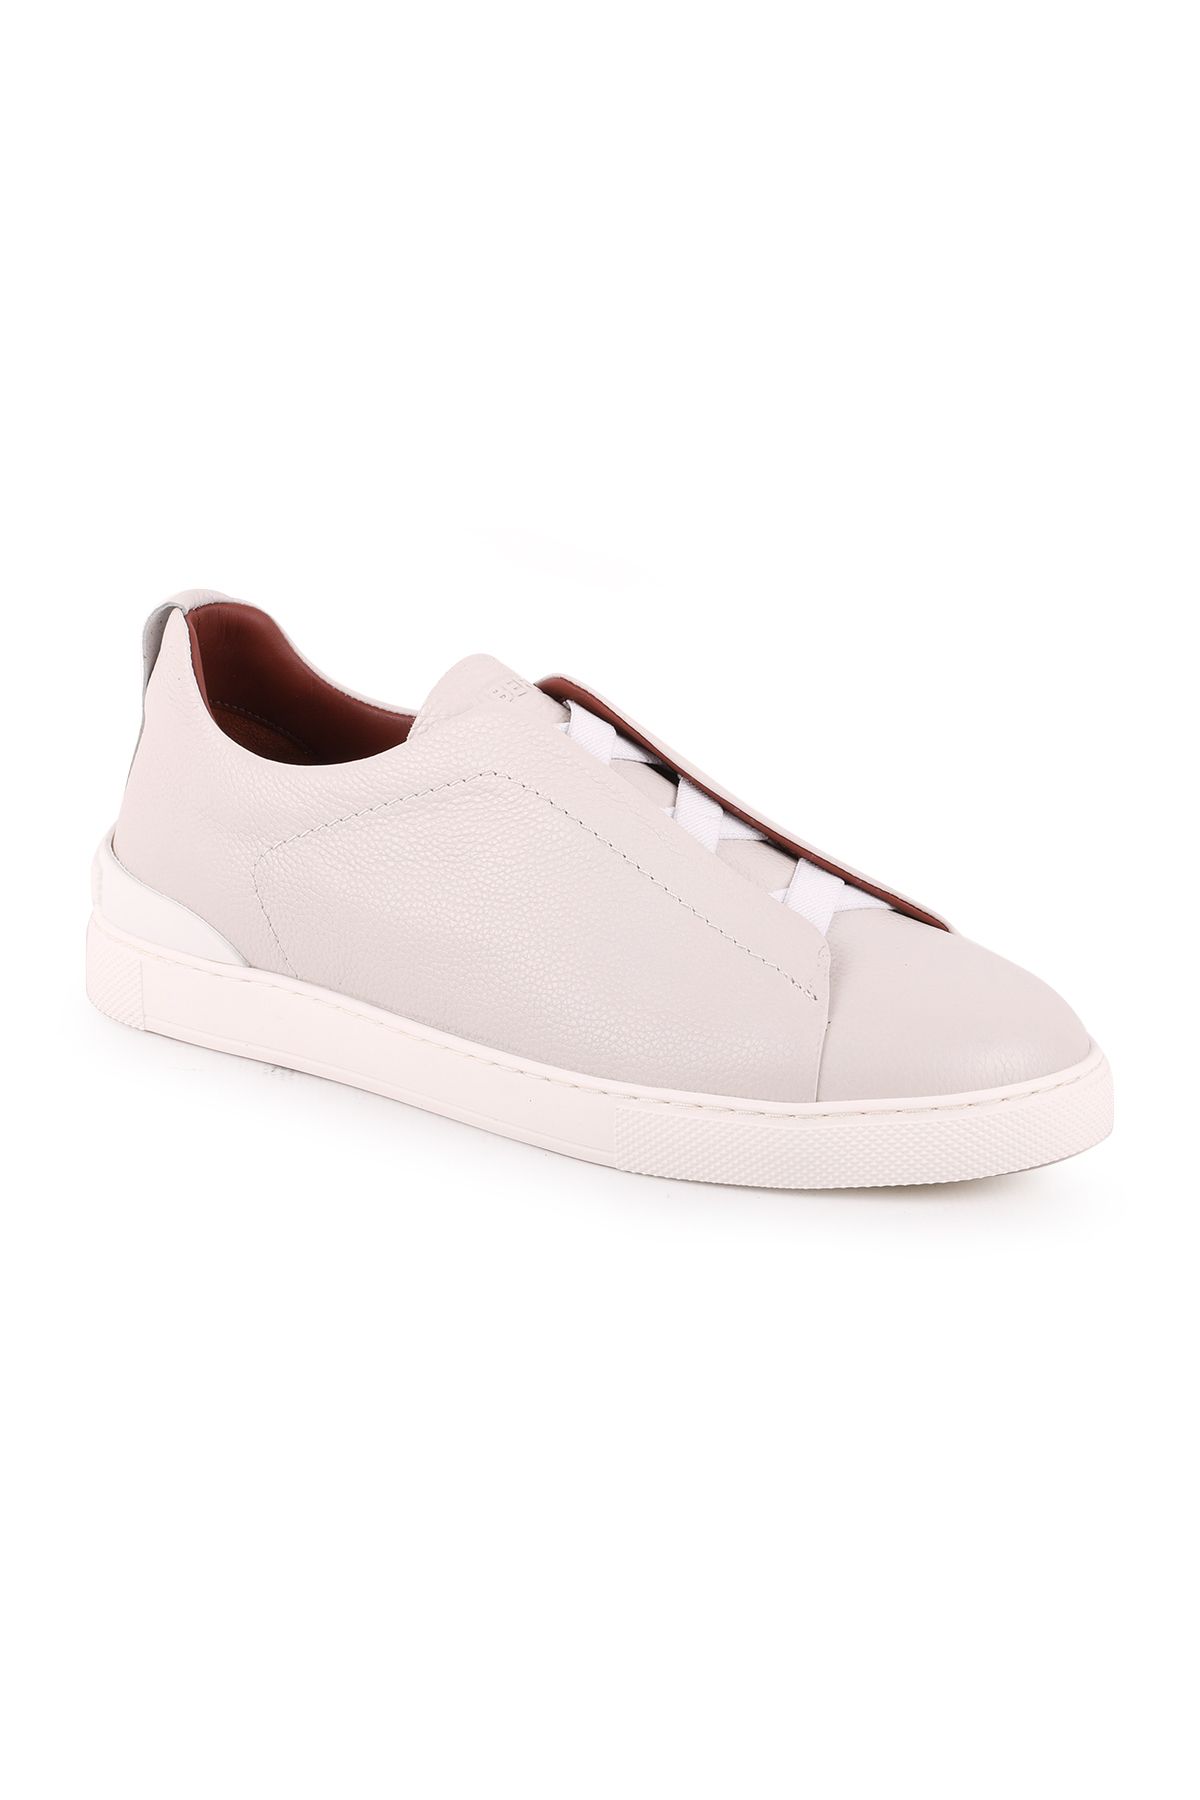 Libero L5202 Deri Erkek Casual Ayakkabı Kırık Beyaz